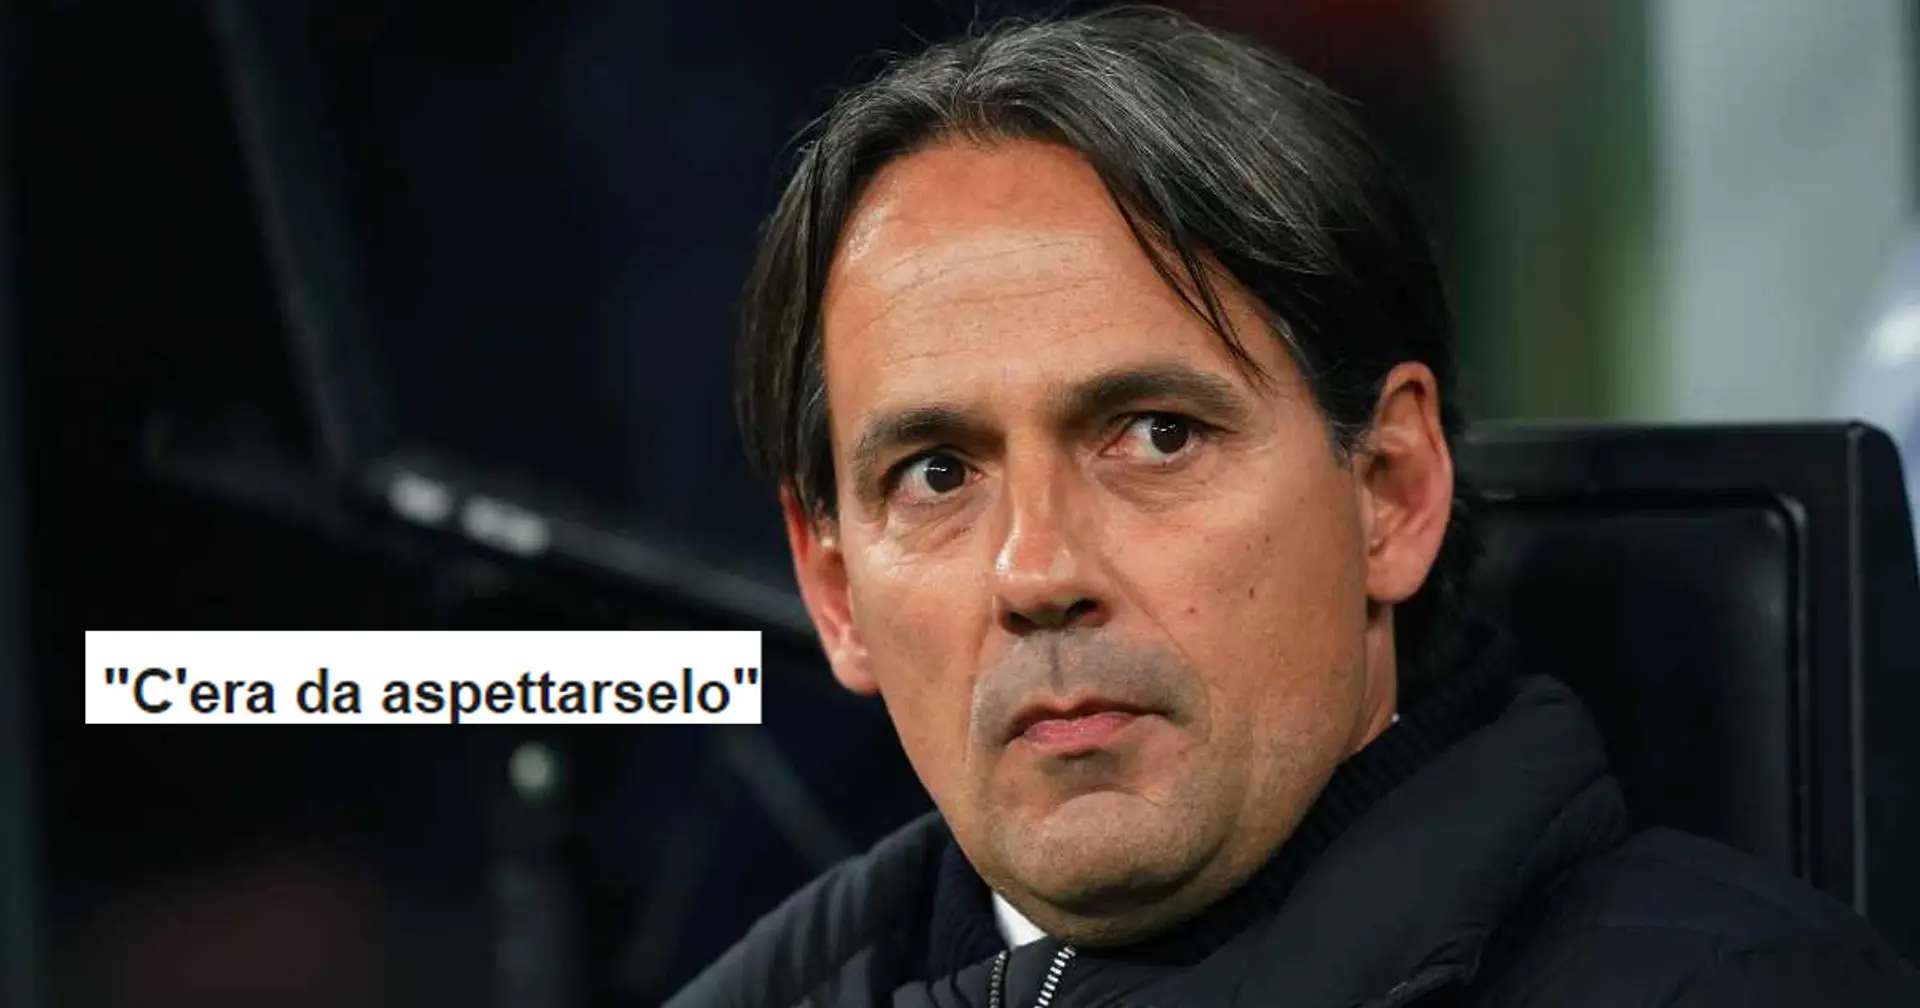 "C'era da aspettarselo": la reazione dei tifosi dell'Inter all'interesse delle big d'Europa per Simone Inzaghi